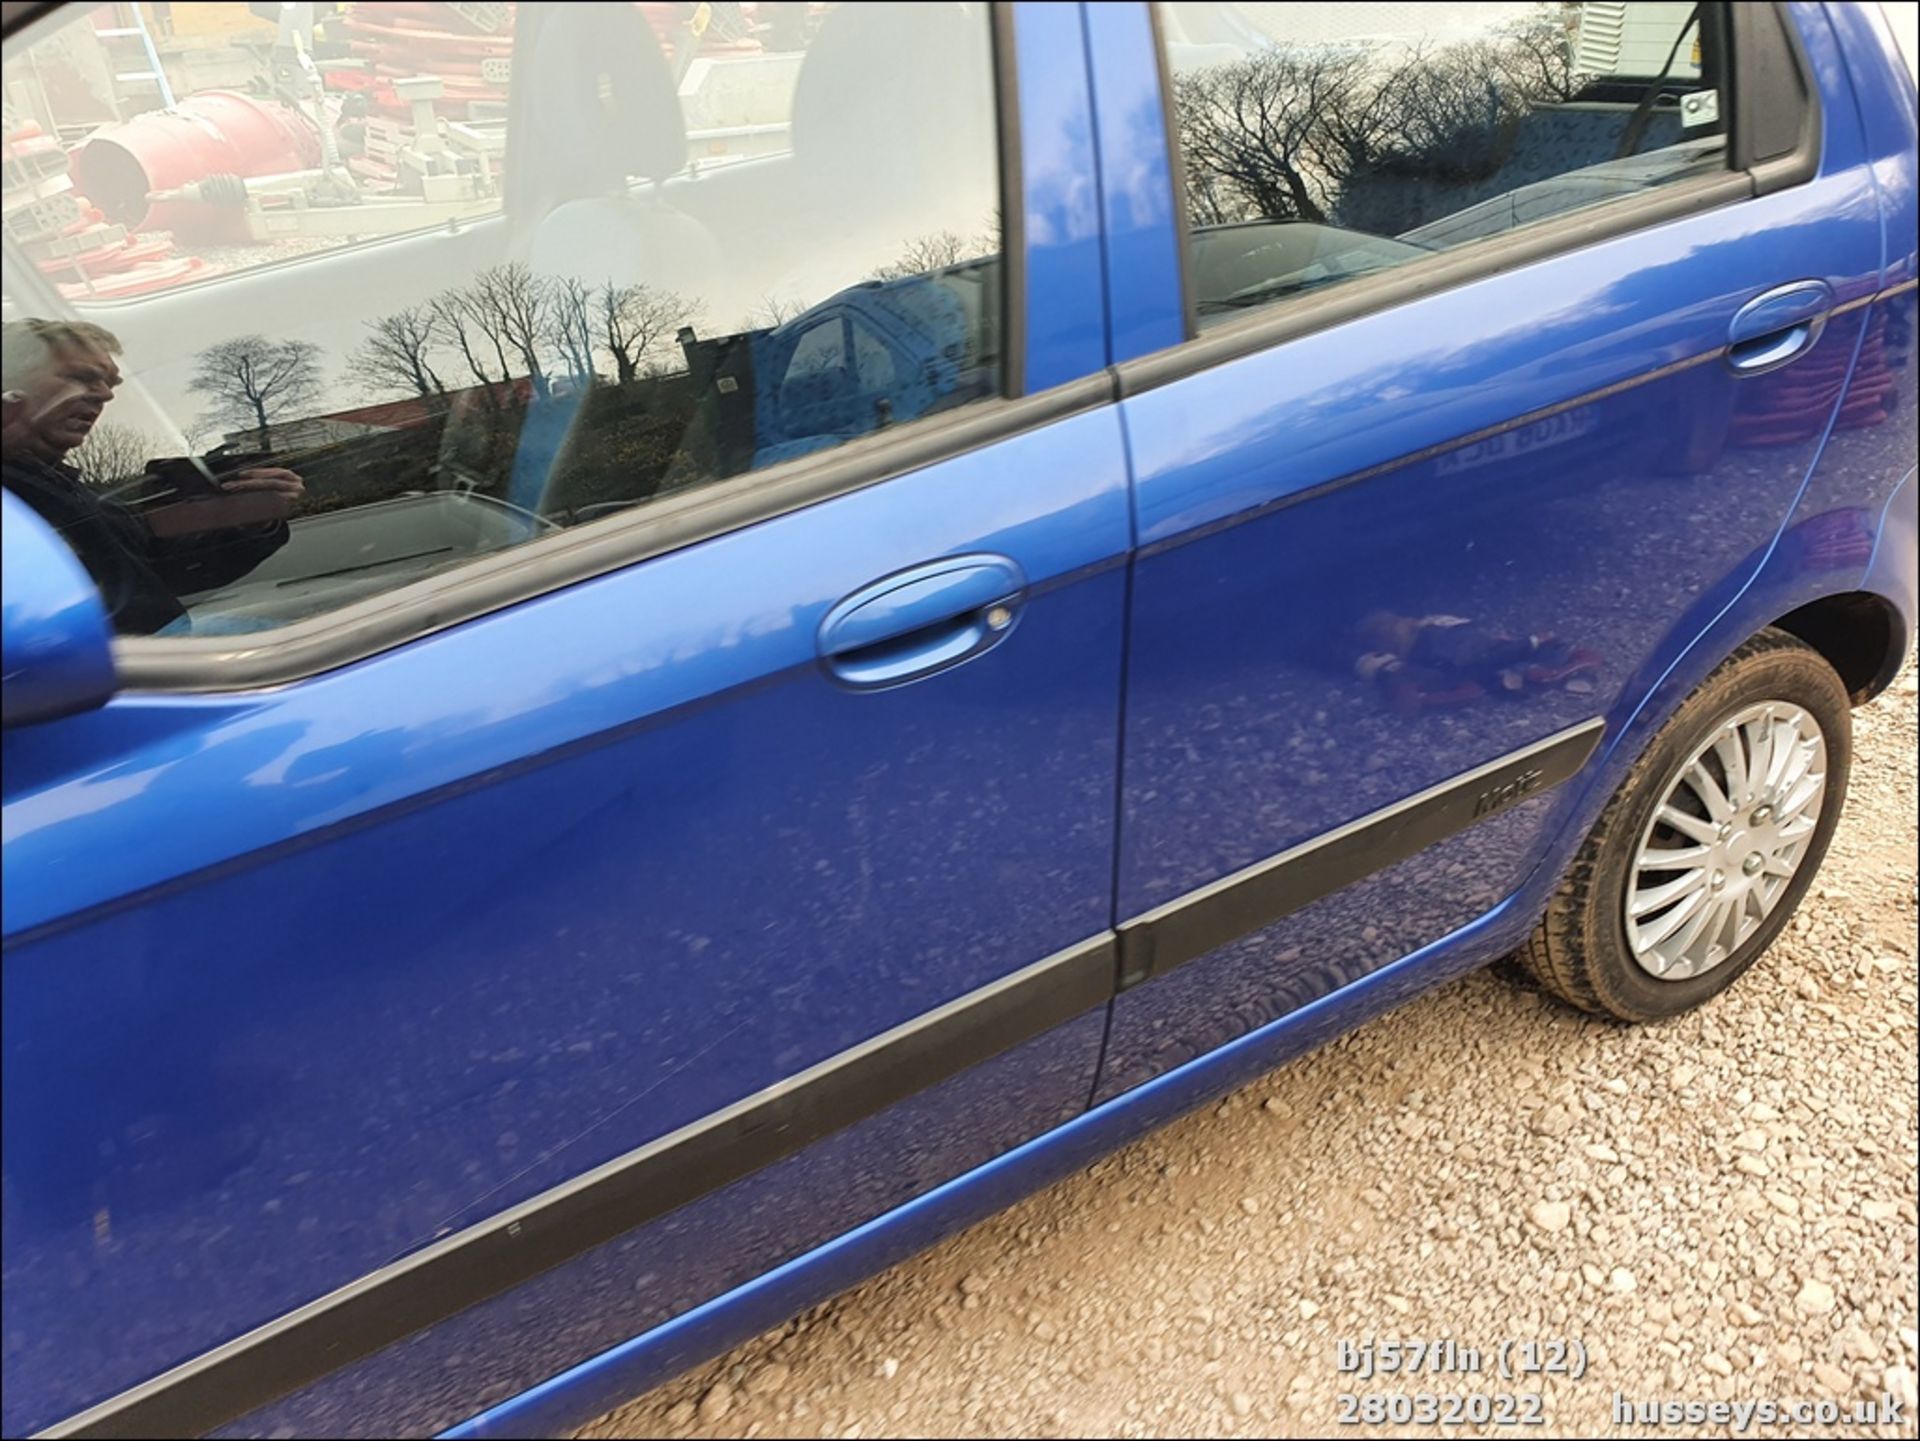 07/57 CHEVROLET MATIZ SE - 995cc 5dr Hatchback (Blue, 70k) - Image 12 of 24